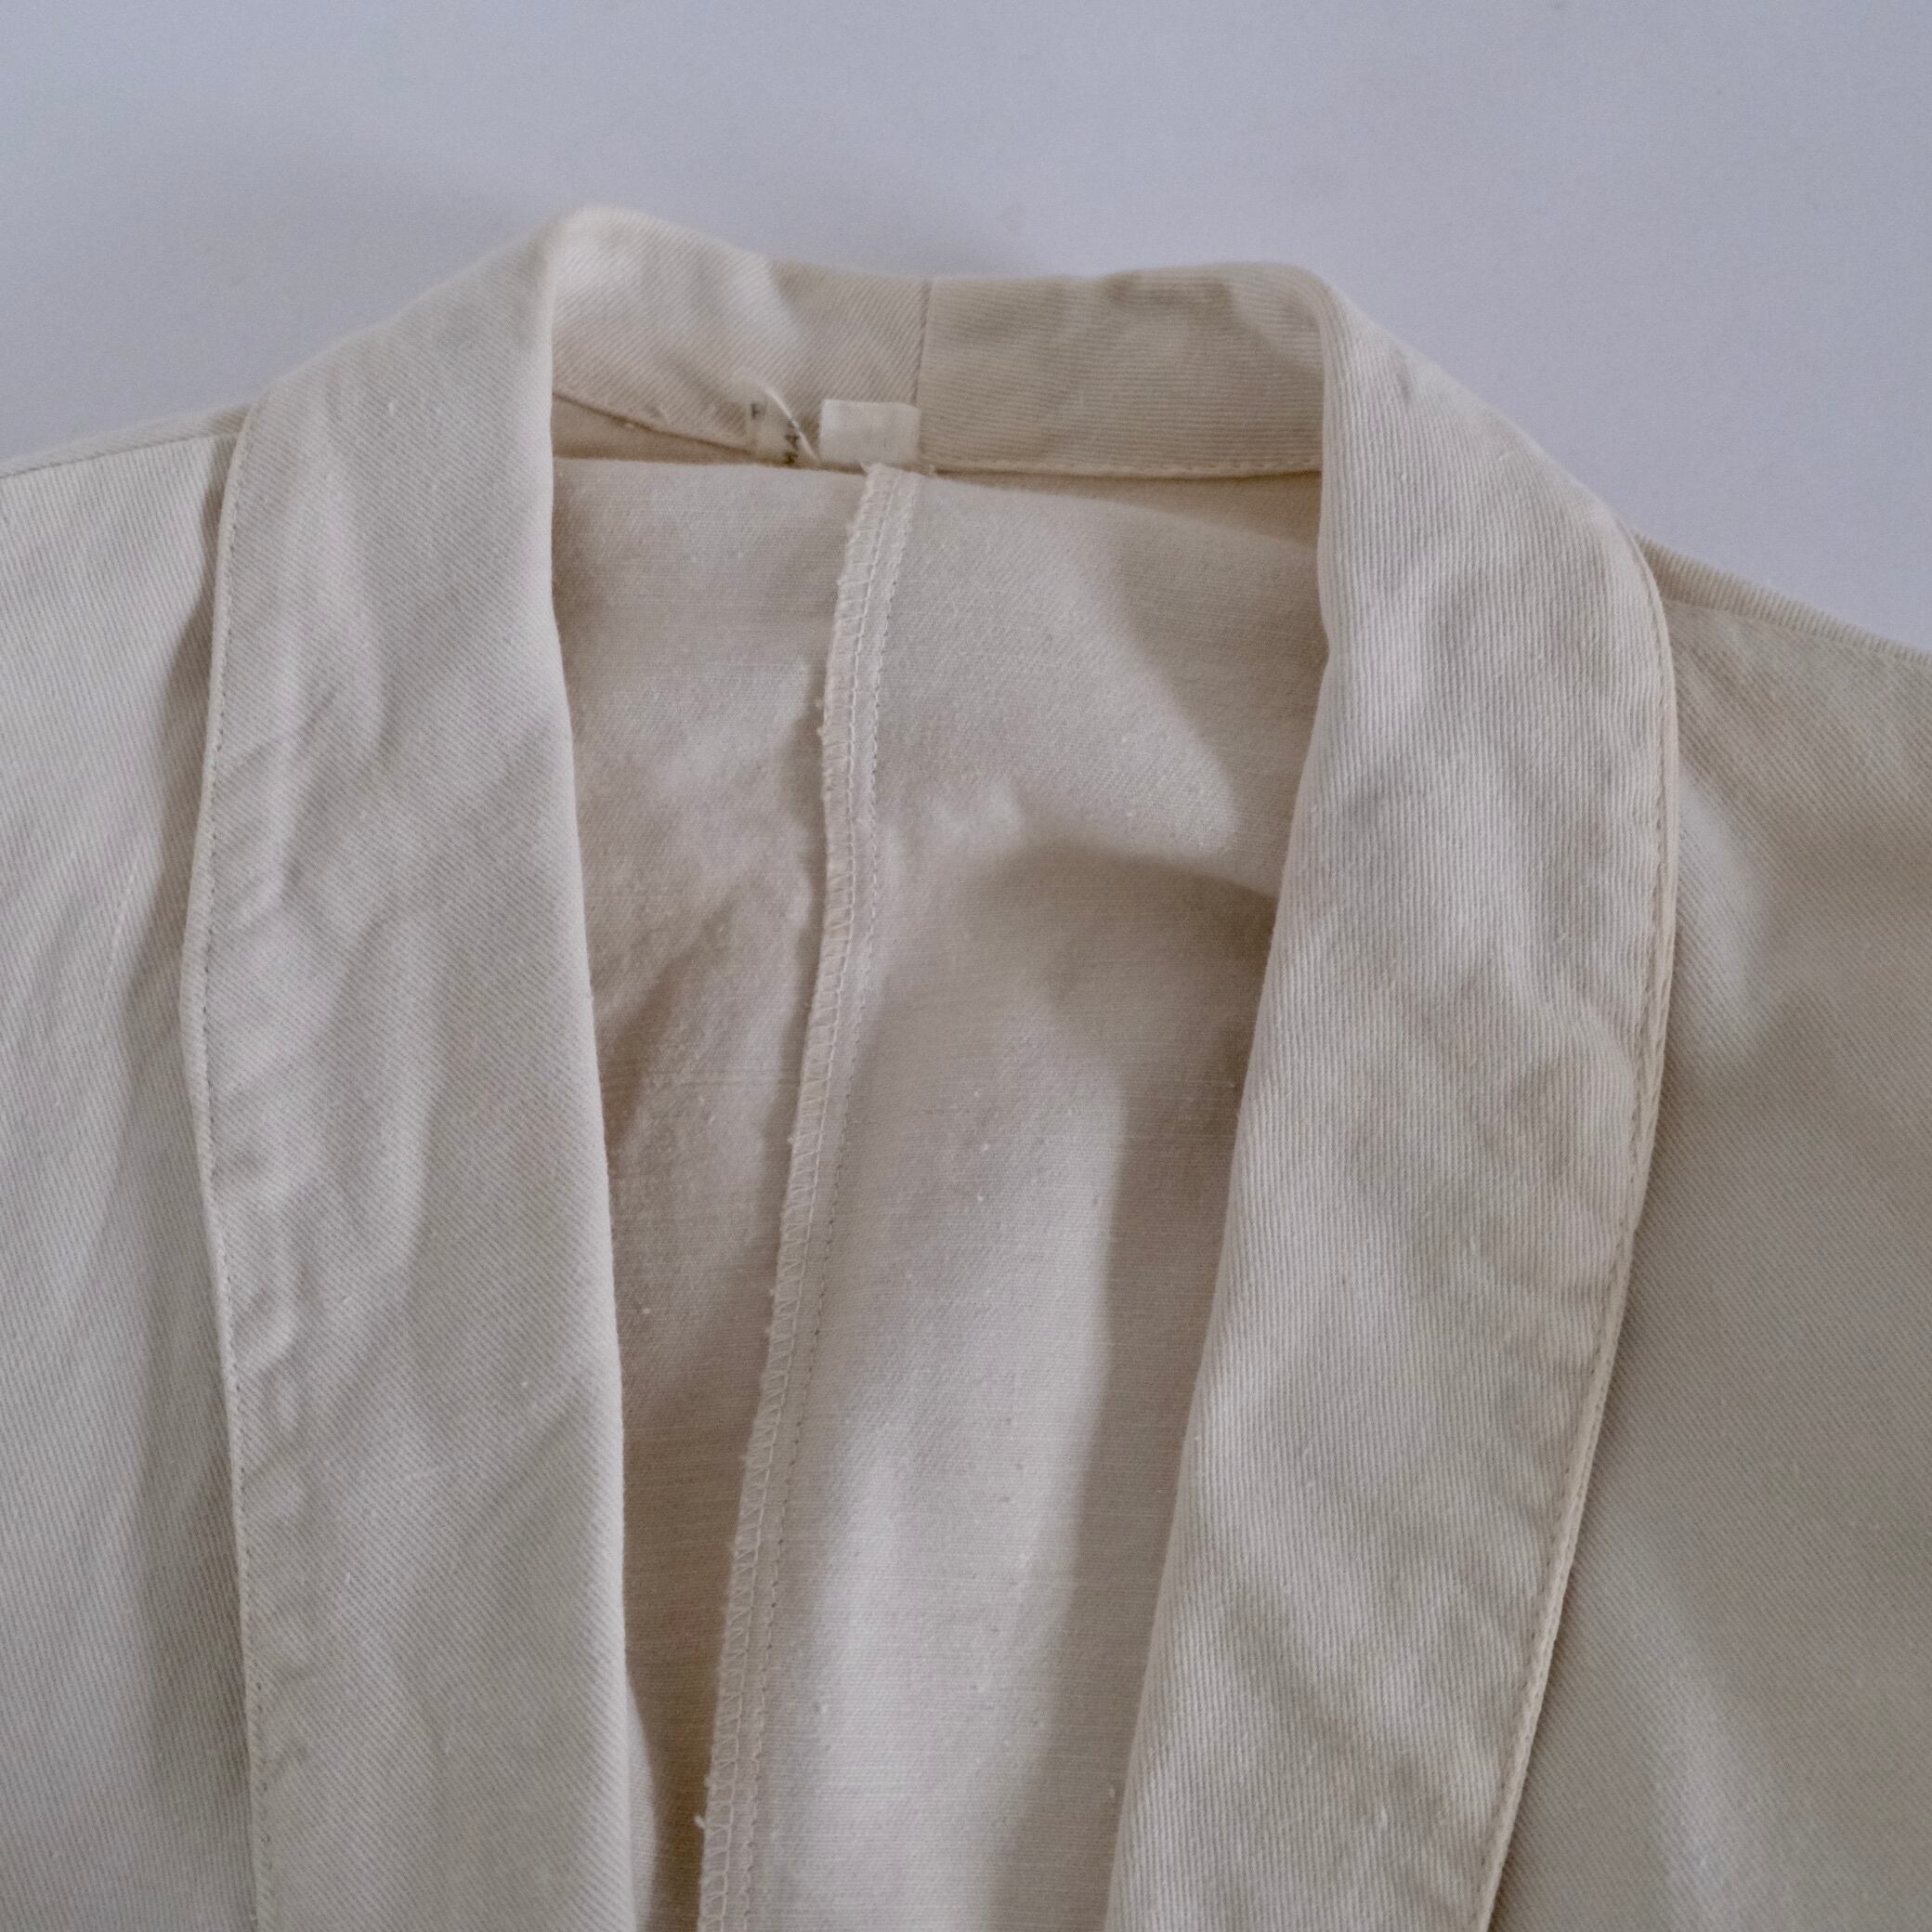 FRENCH WORK 】 AU MOLINEL Cotton twill Shawl Collar Jacket